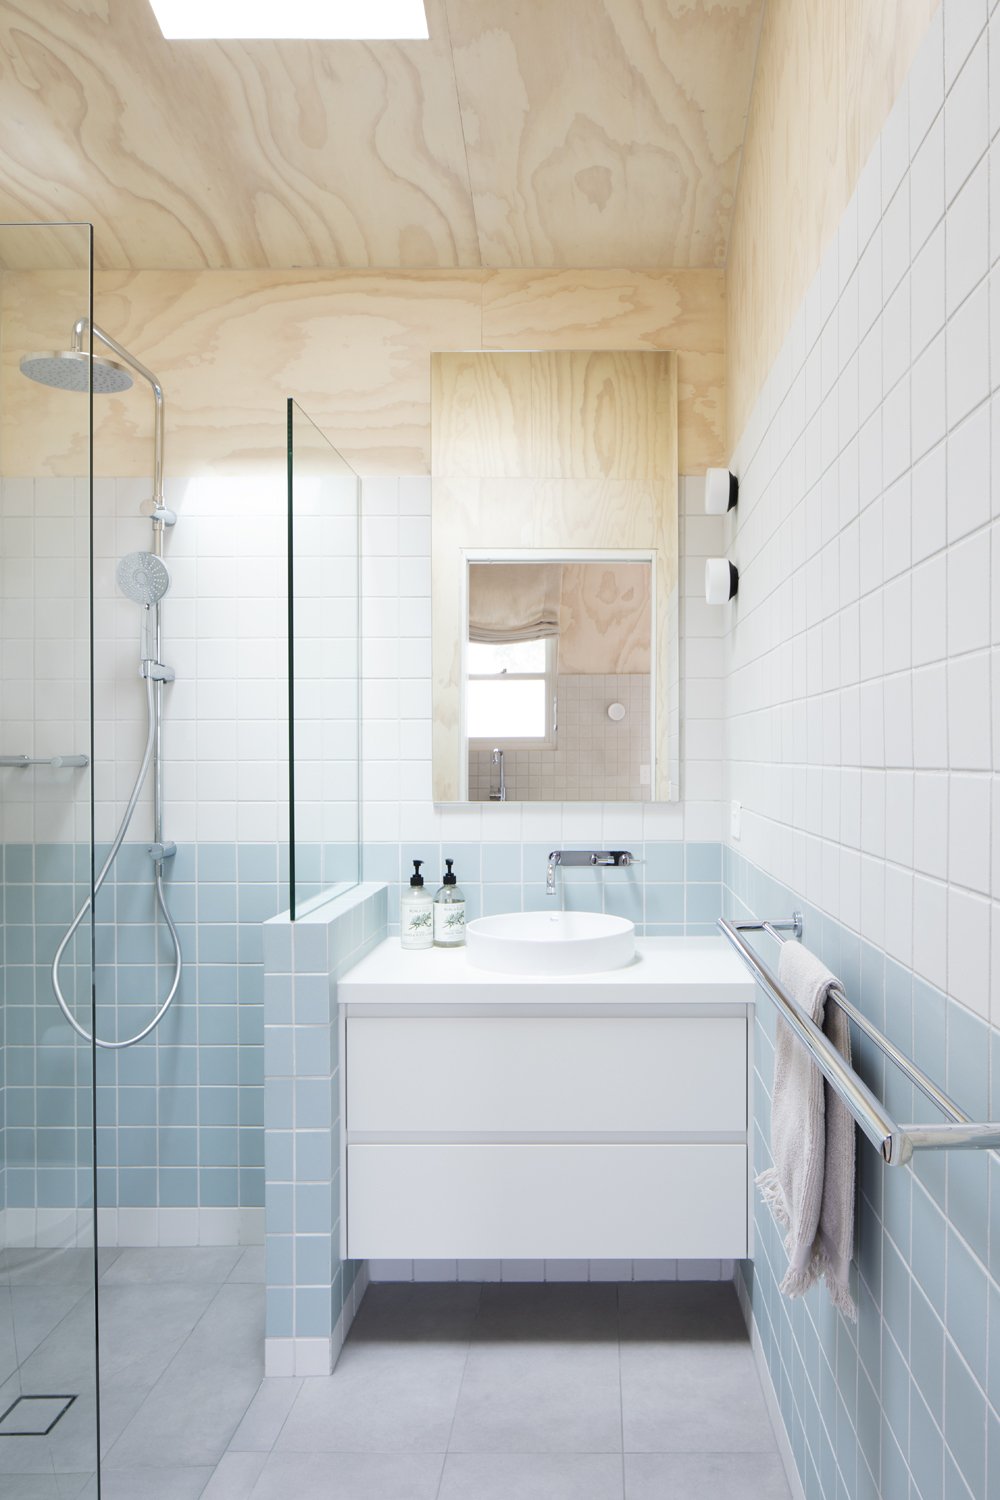 Ensuite bathroom designed by Melbourne interior designer Meredith Lee